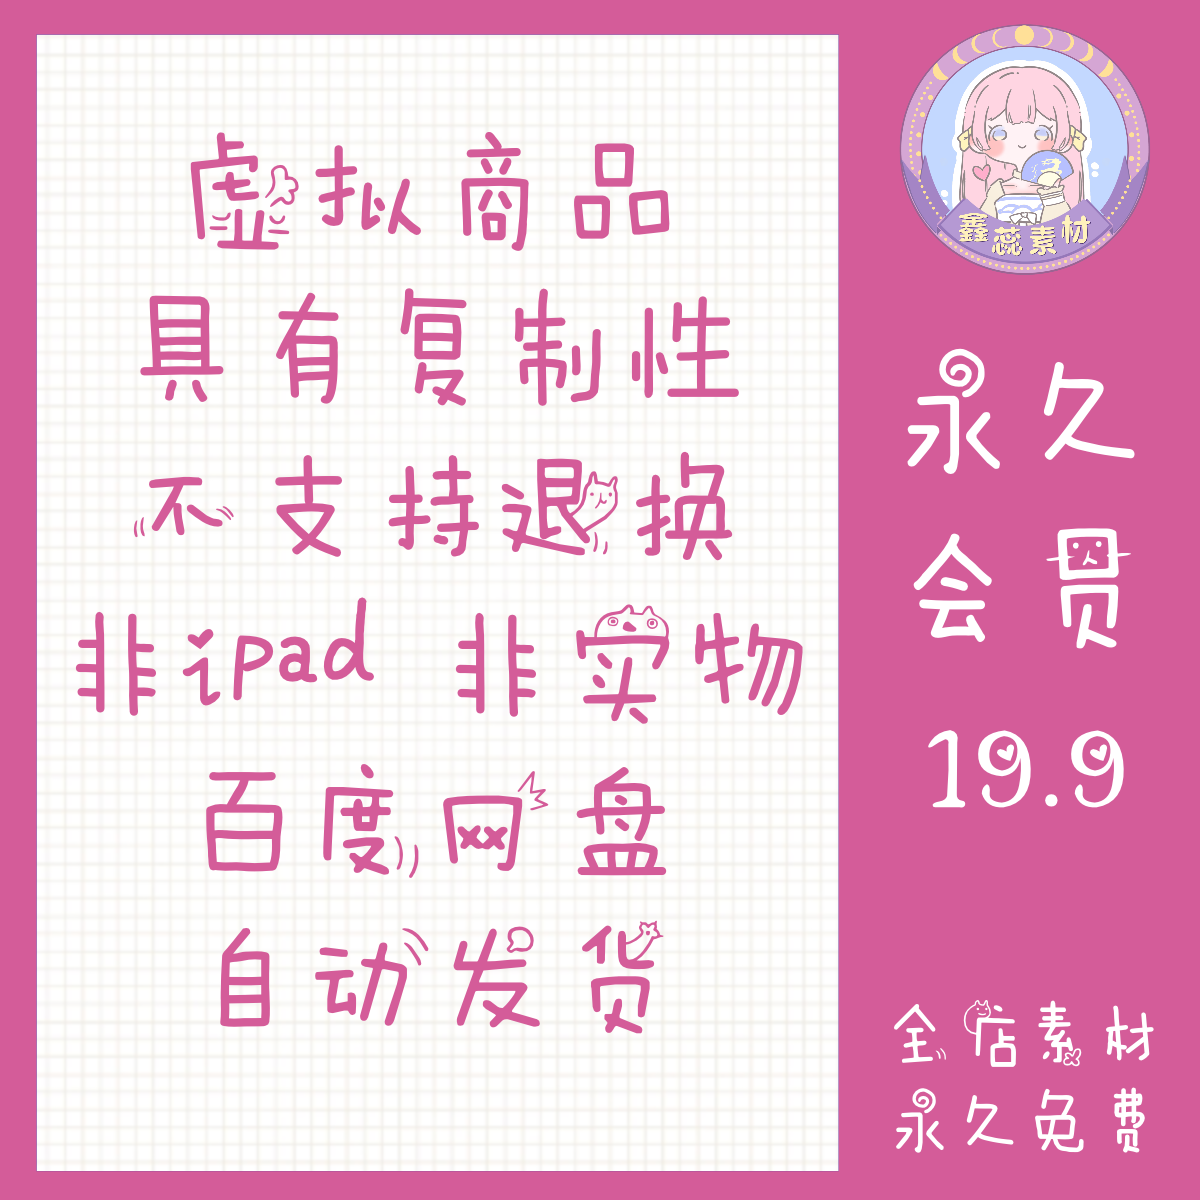 ps/procreate中文字体超好用可爱风卡通动漫多样涂鸦小清新 - 图1